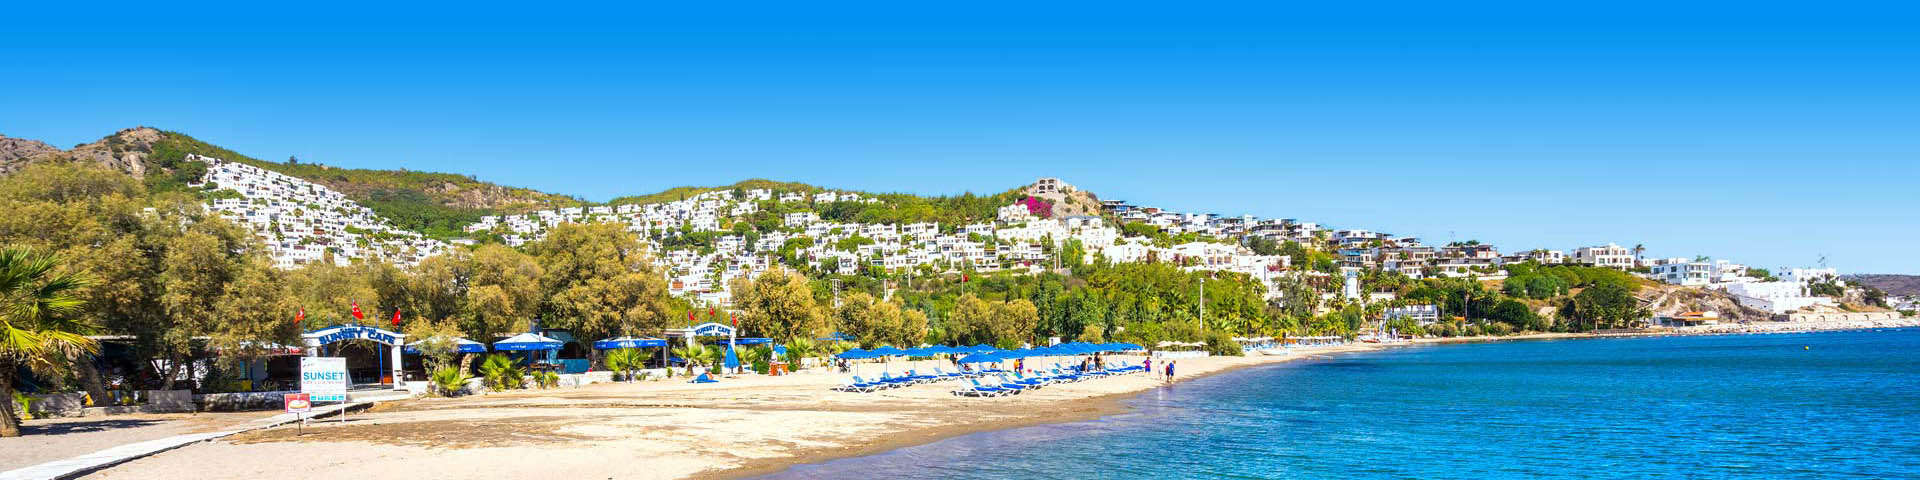 Wit strand in Bodrum, Turkije zonvakantie September